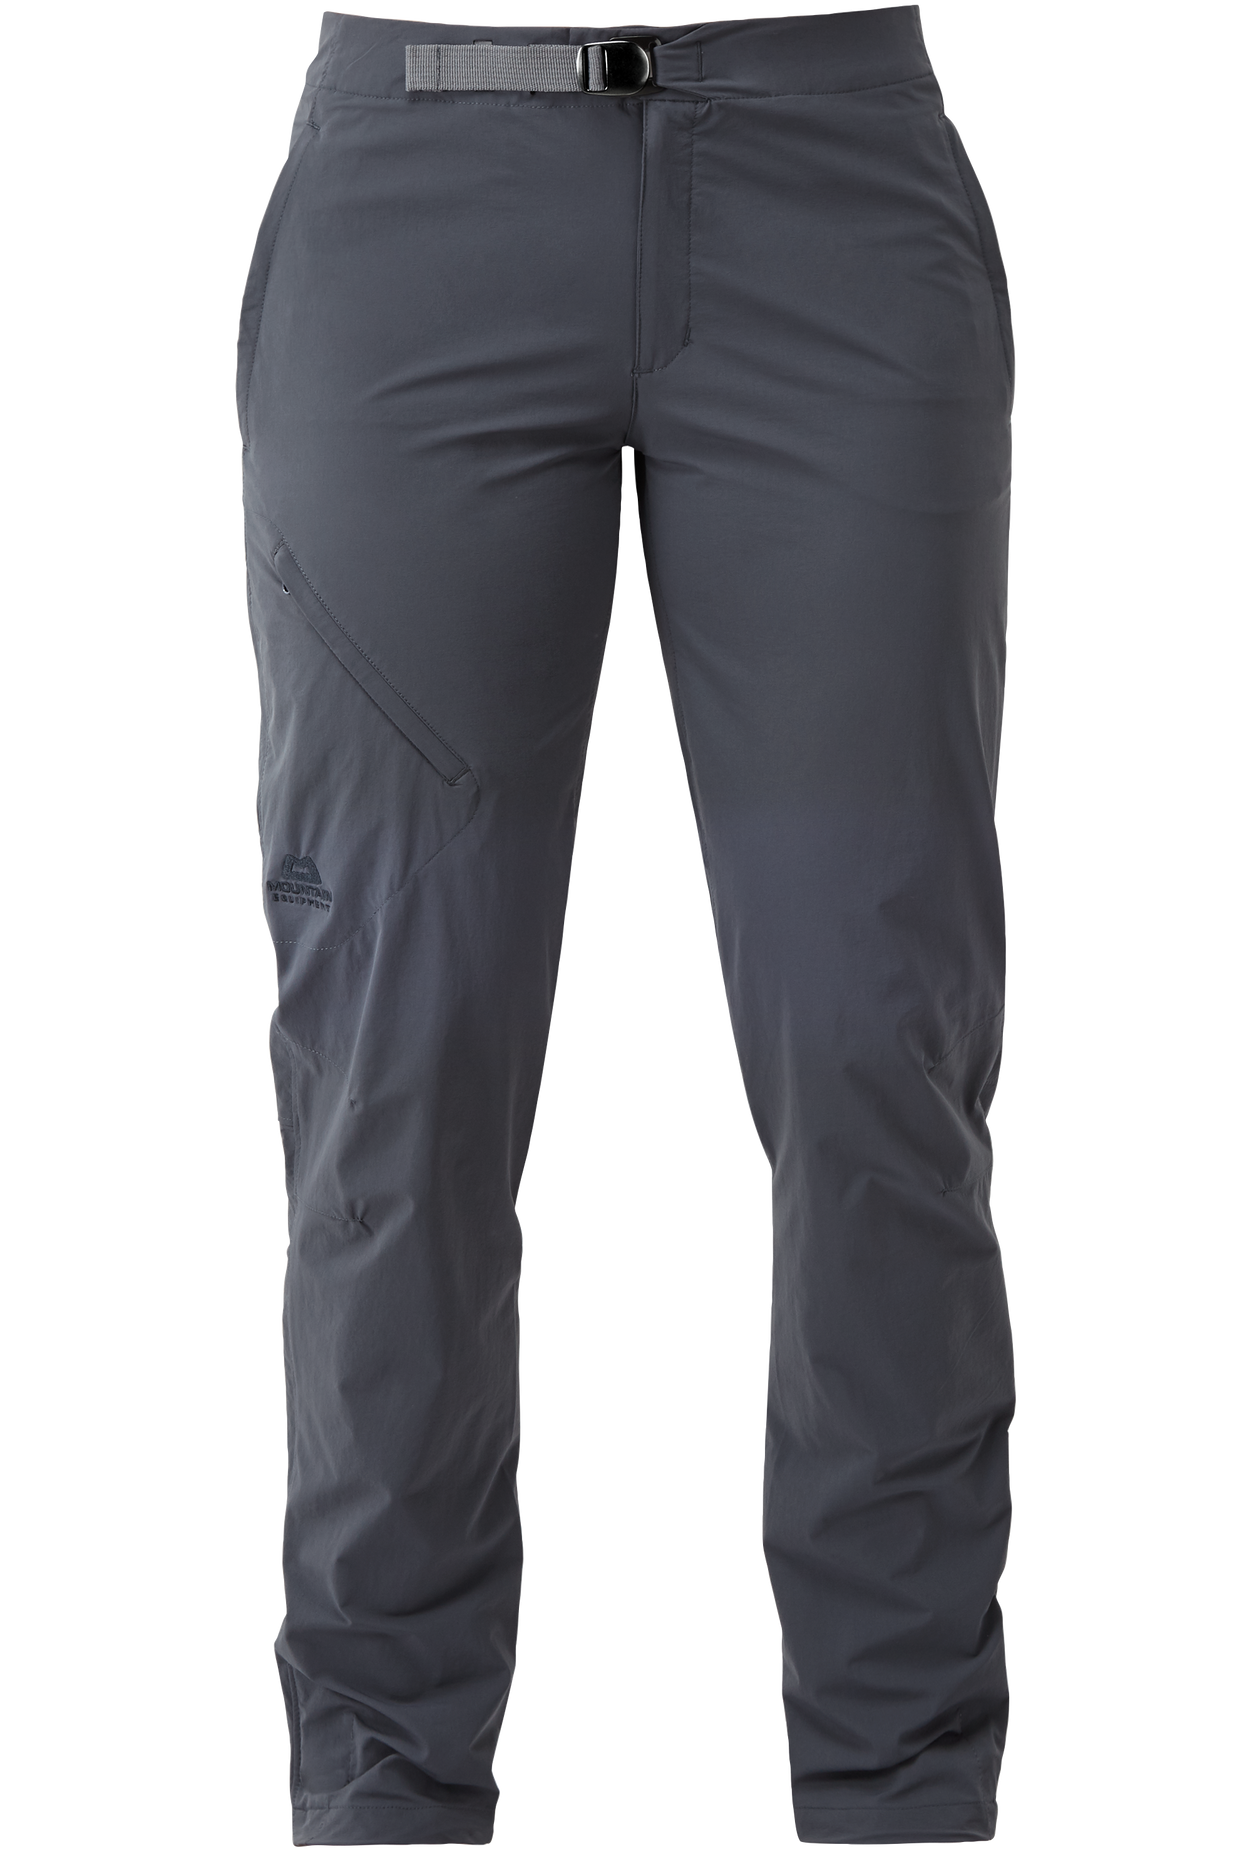 Mountain Equipment dámské softshellové kalhoty Comici Wmns Pant Barva: Ombre Blue, Velikost: 10/S